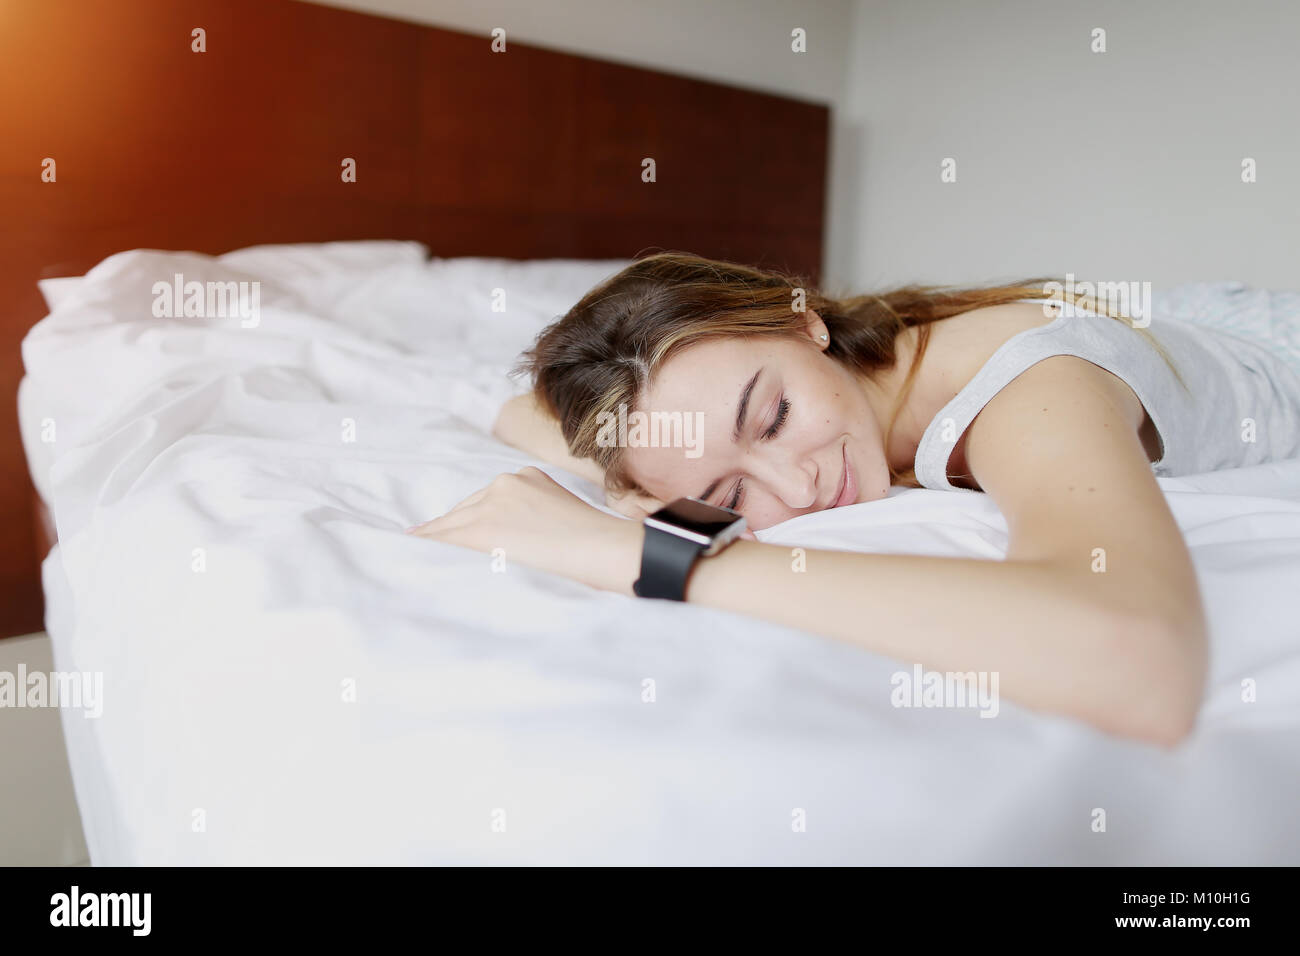 Bastante joven durmiendo utiliza Smartwatch con precisión de rastreo del sueño Foto de stock